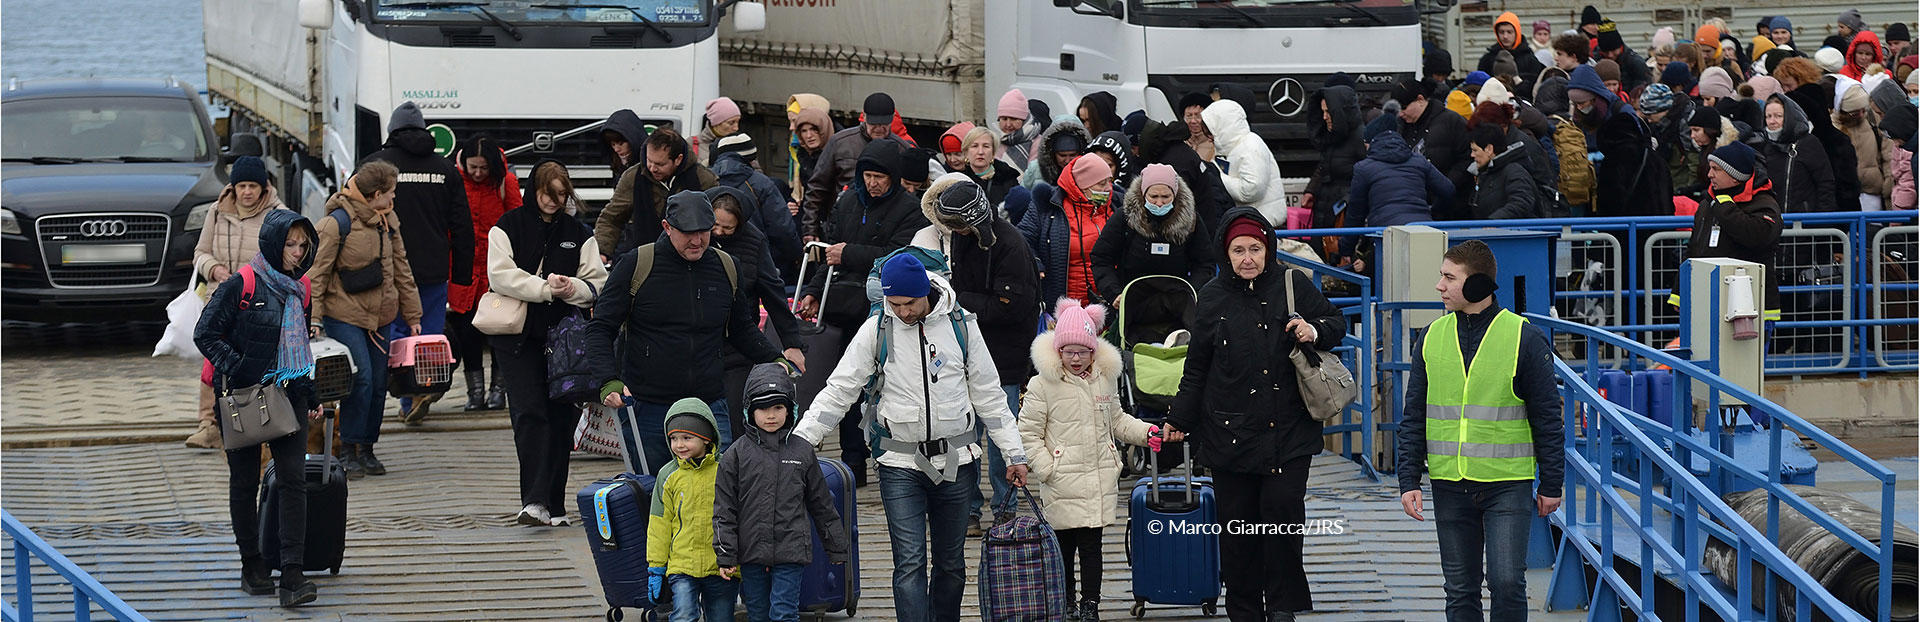 La Compagnia di Gesù ha risposto alla crisi umanitaria in Ucraina e dintorni fin dal primo giorno